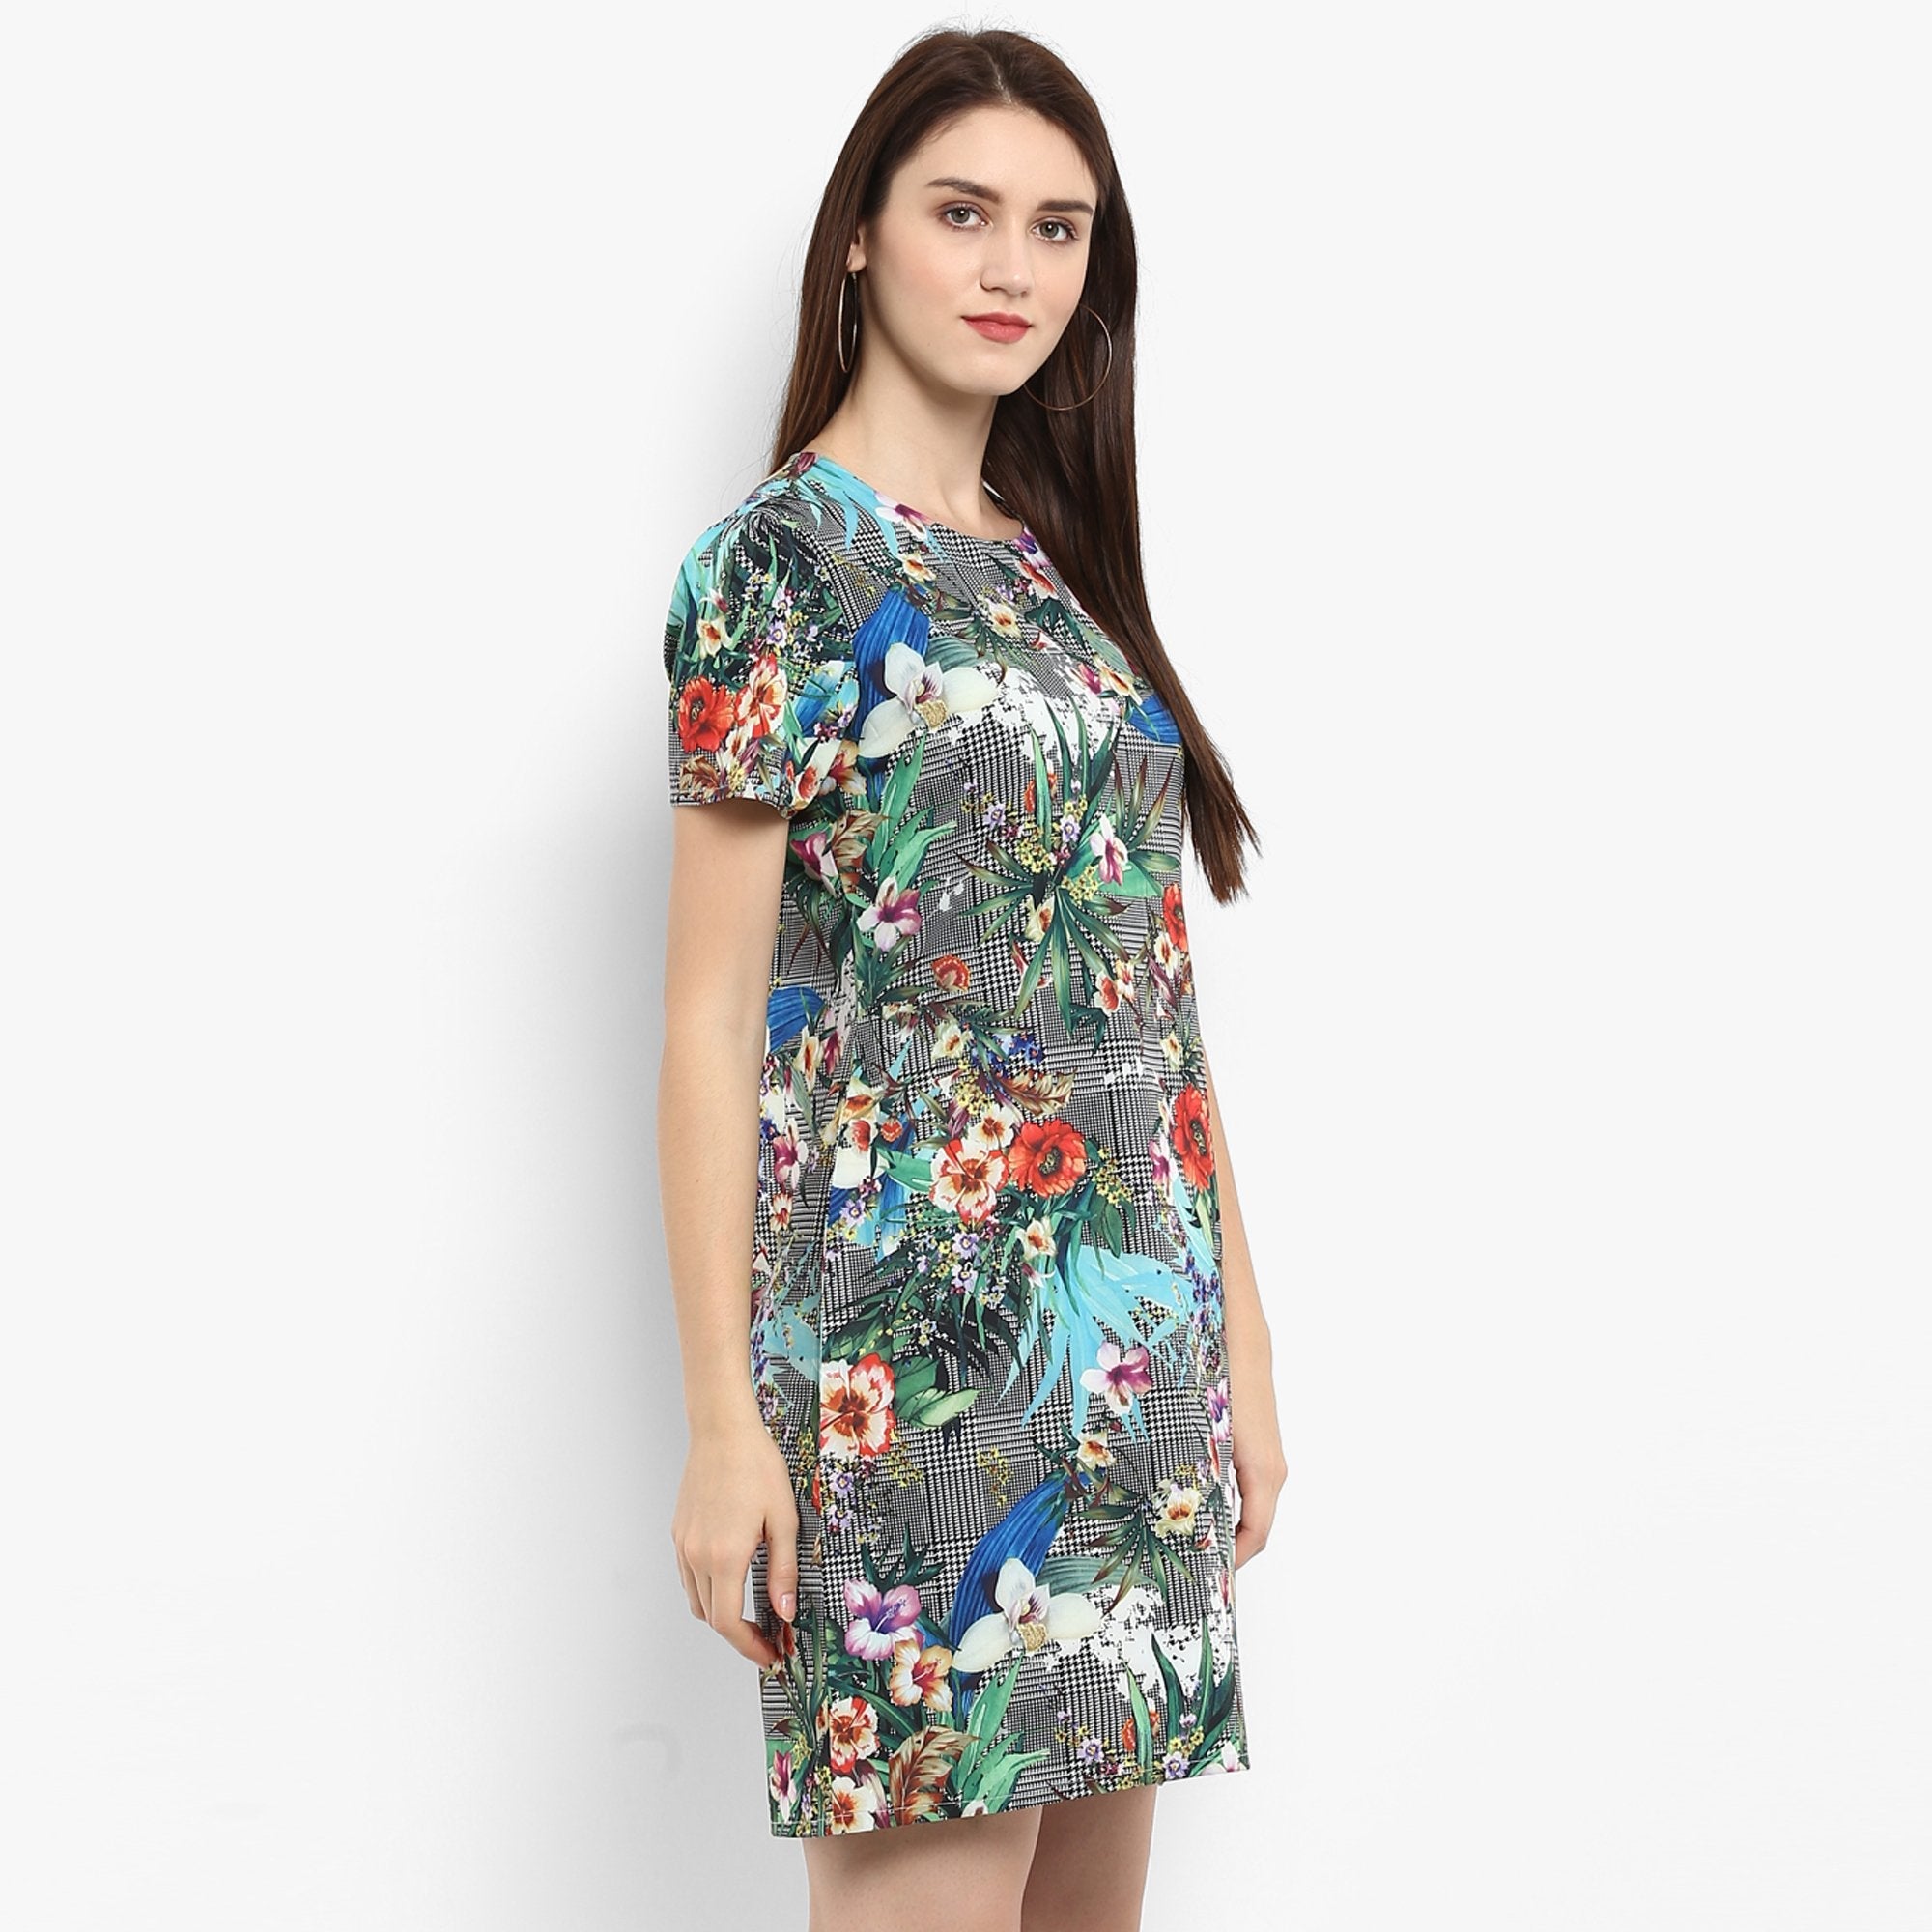 Women's Floral Checkered Dress - Pannkh